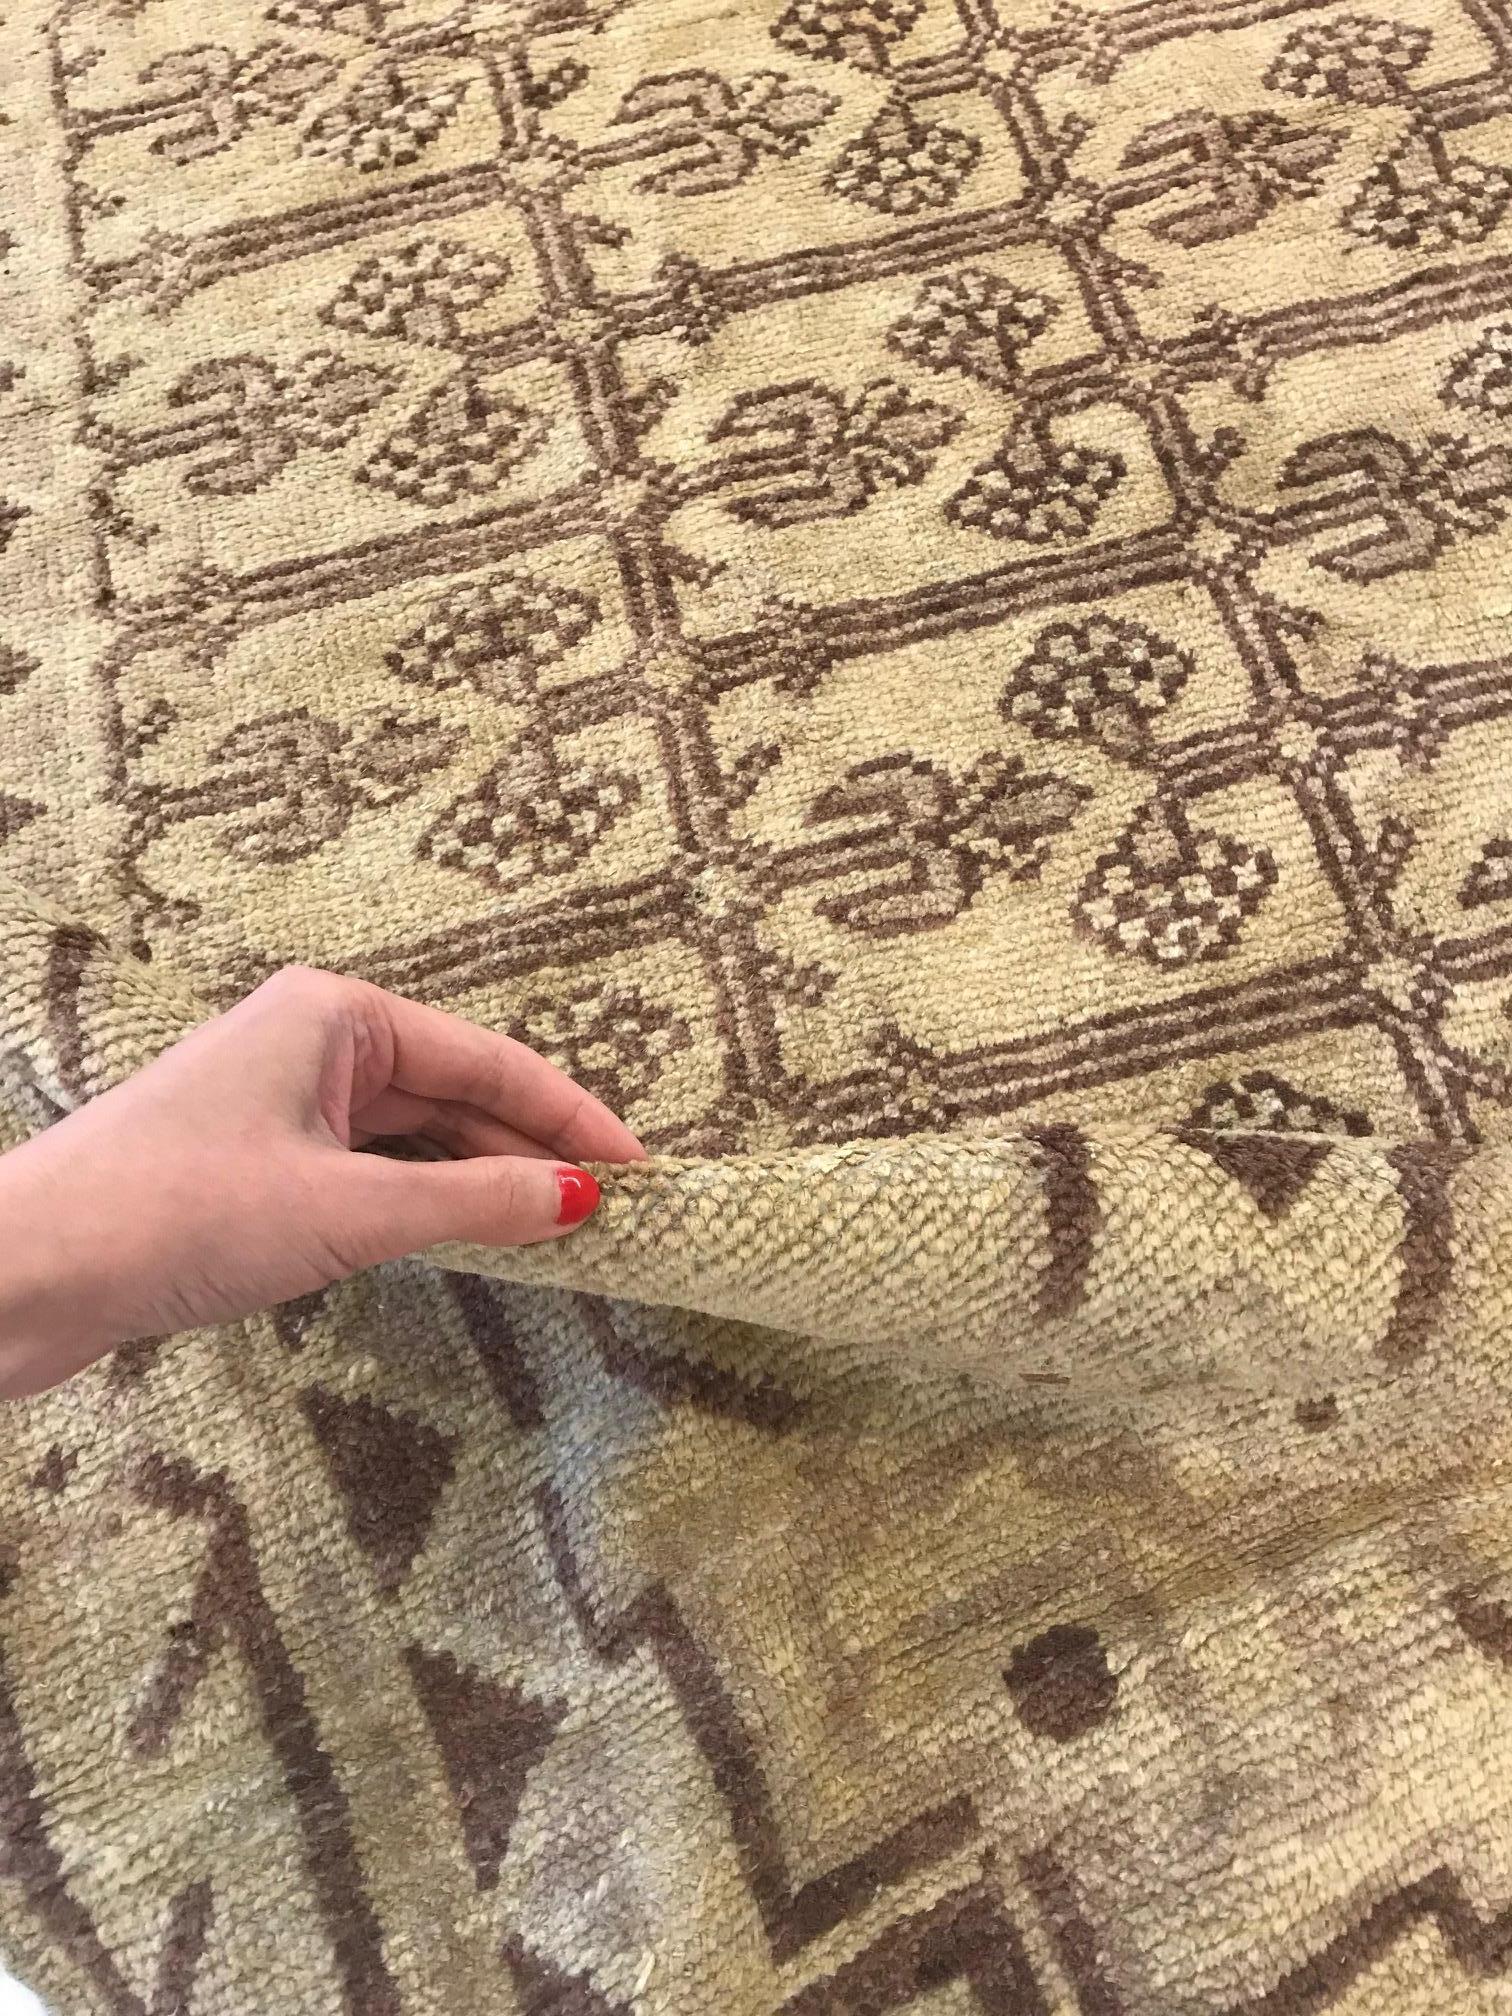 One-of-a-kind Vintage Khotan (Samarkand) rug by Doris Leslie Blau
Size: 10'7